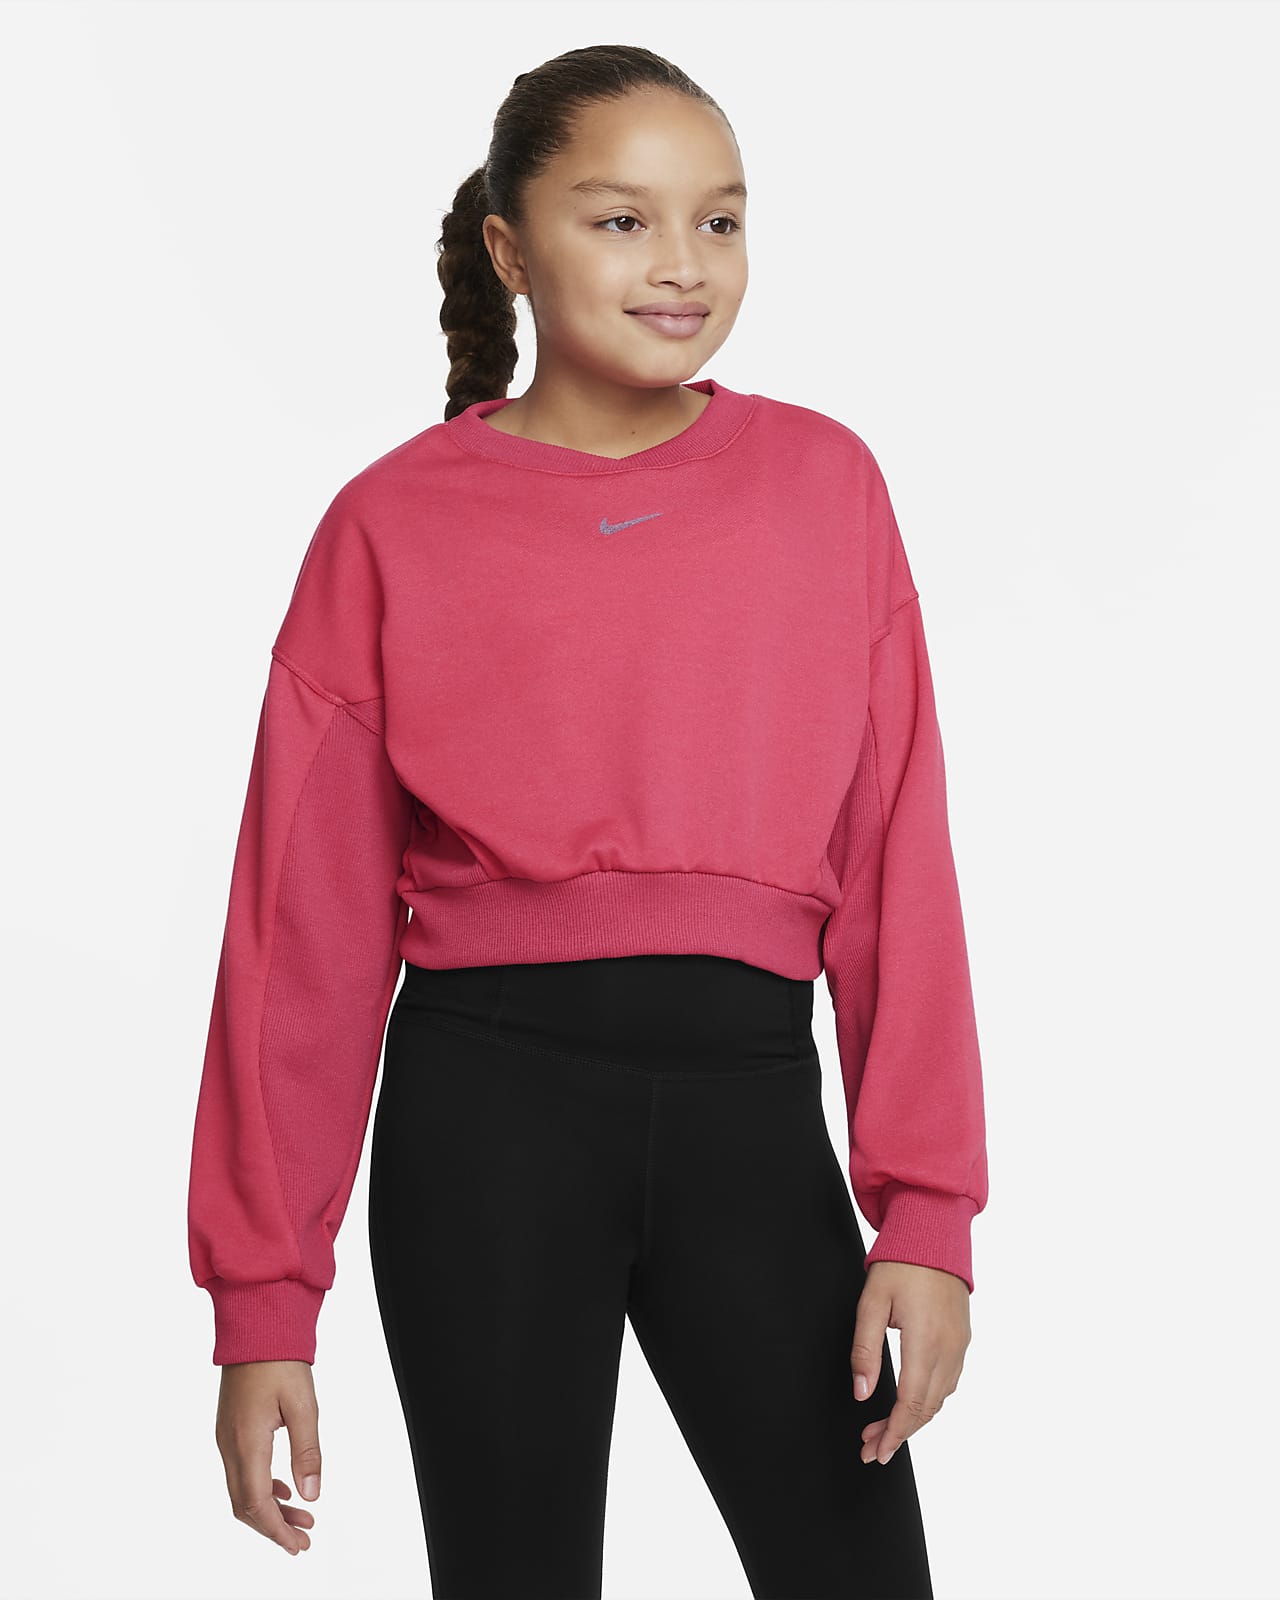 Tröja i pullover-modell Nike Yoga Dri-FIT för ungdom (tjejer)